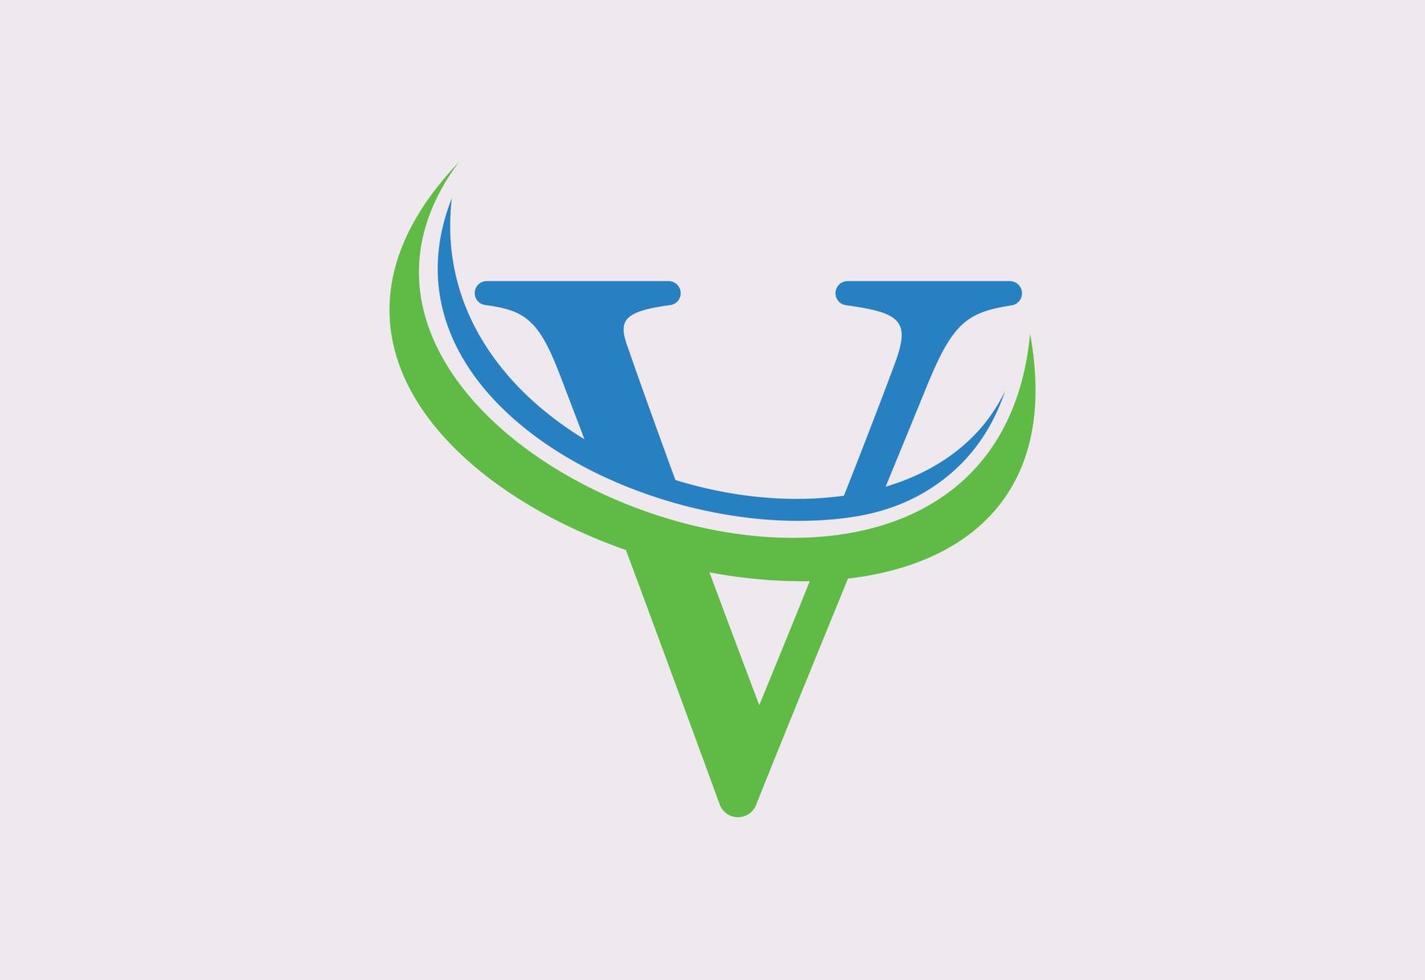 modèle de conception de logo lettre v, illustration vectorielle vecteur